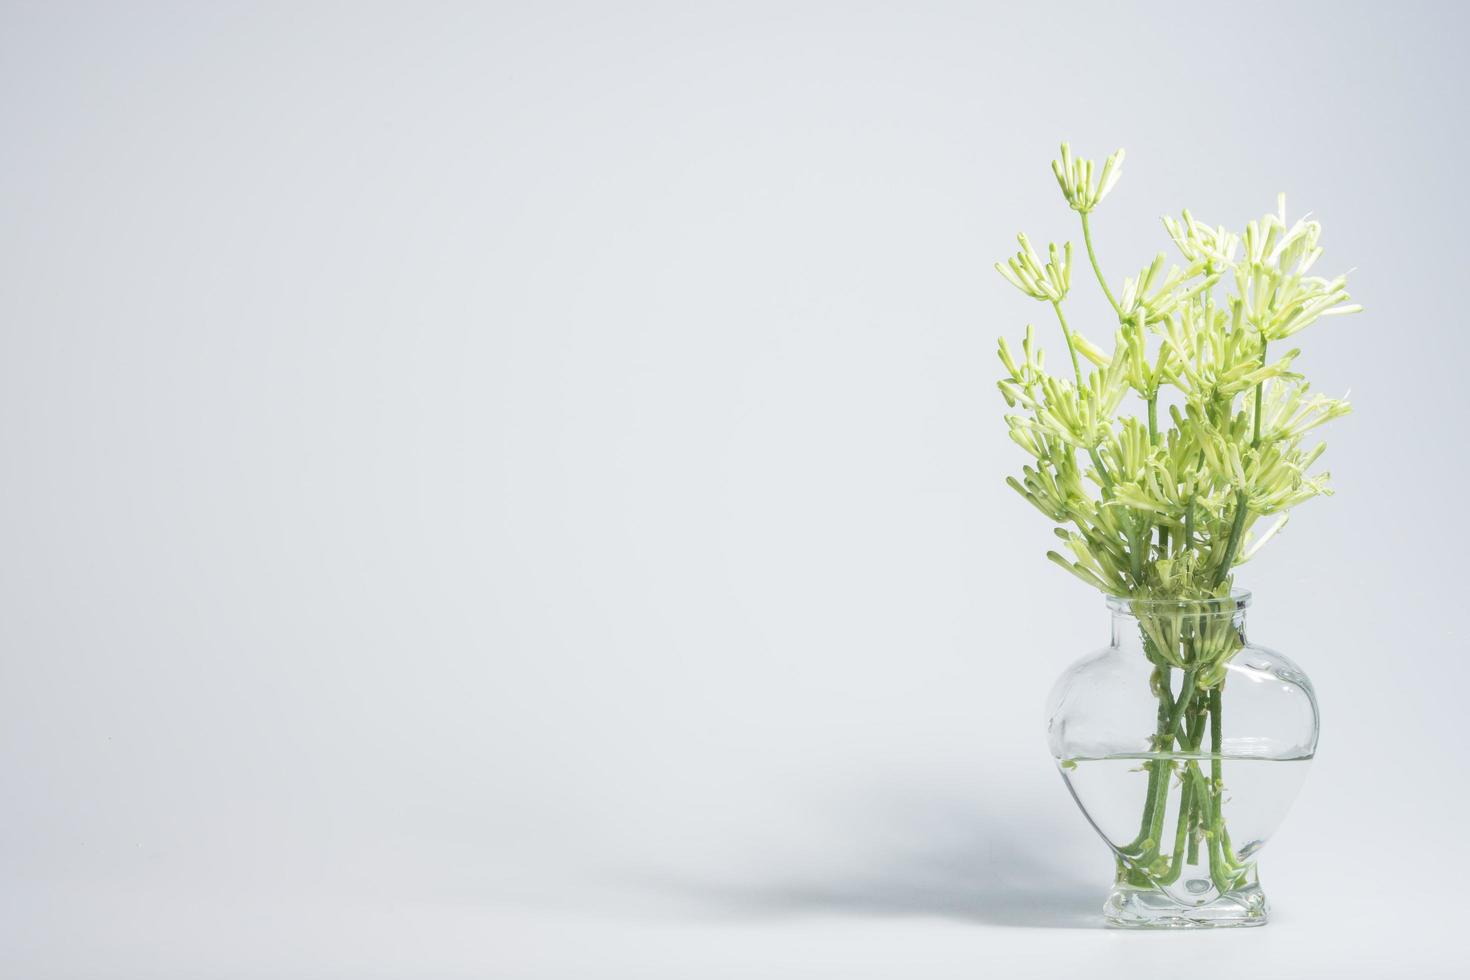 blommor i en glasvas på vit bakgrund foto